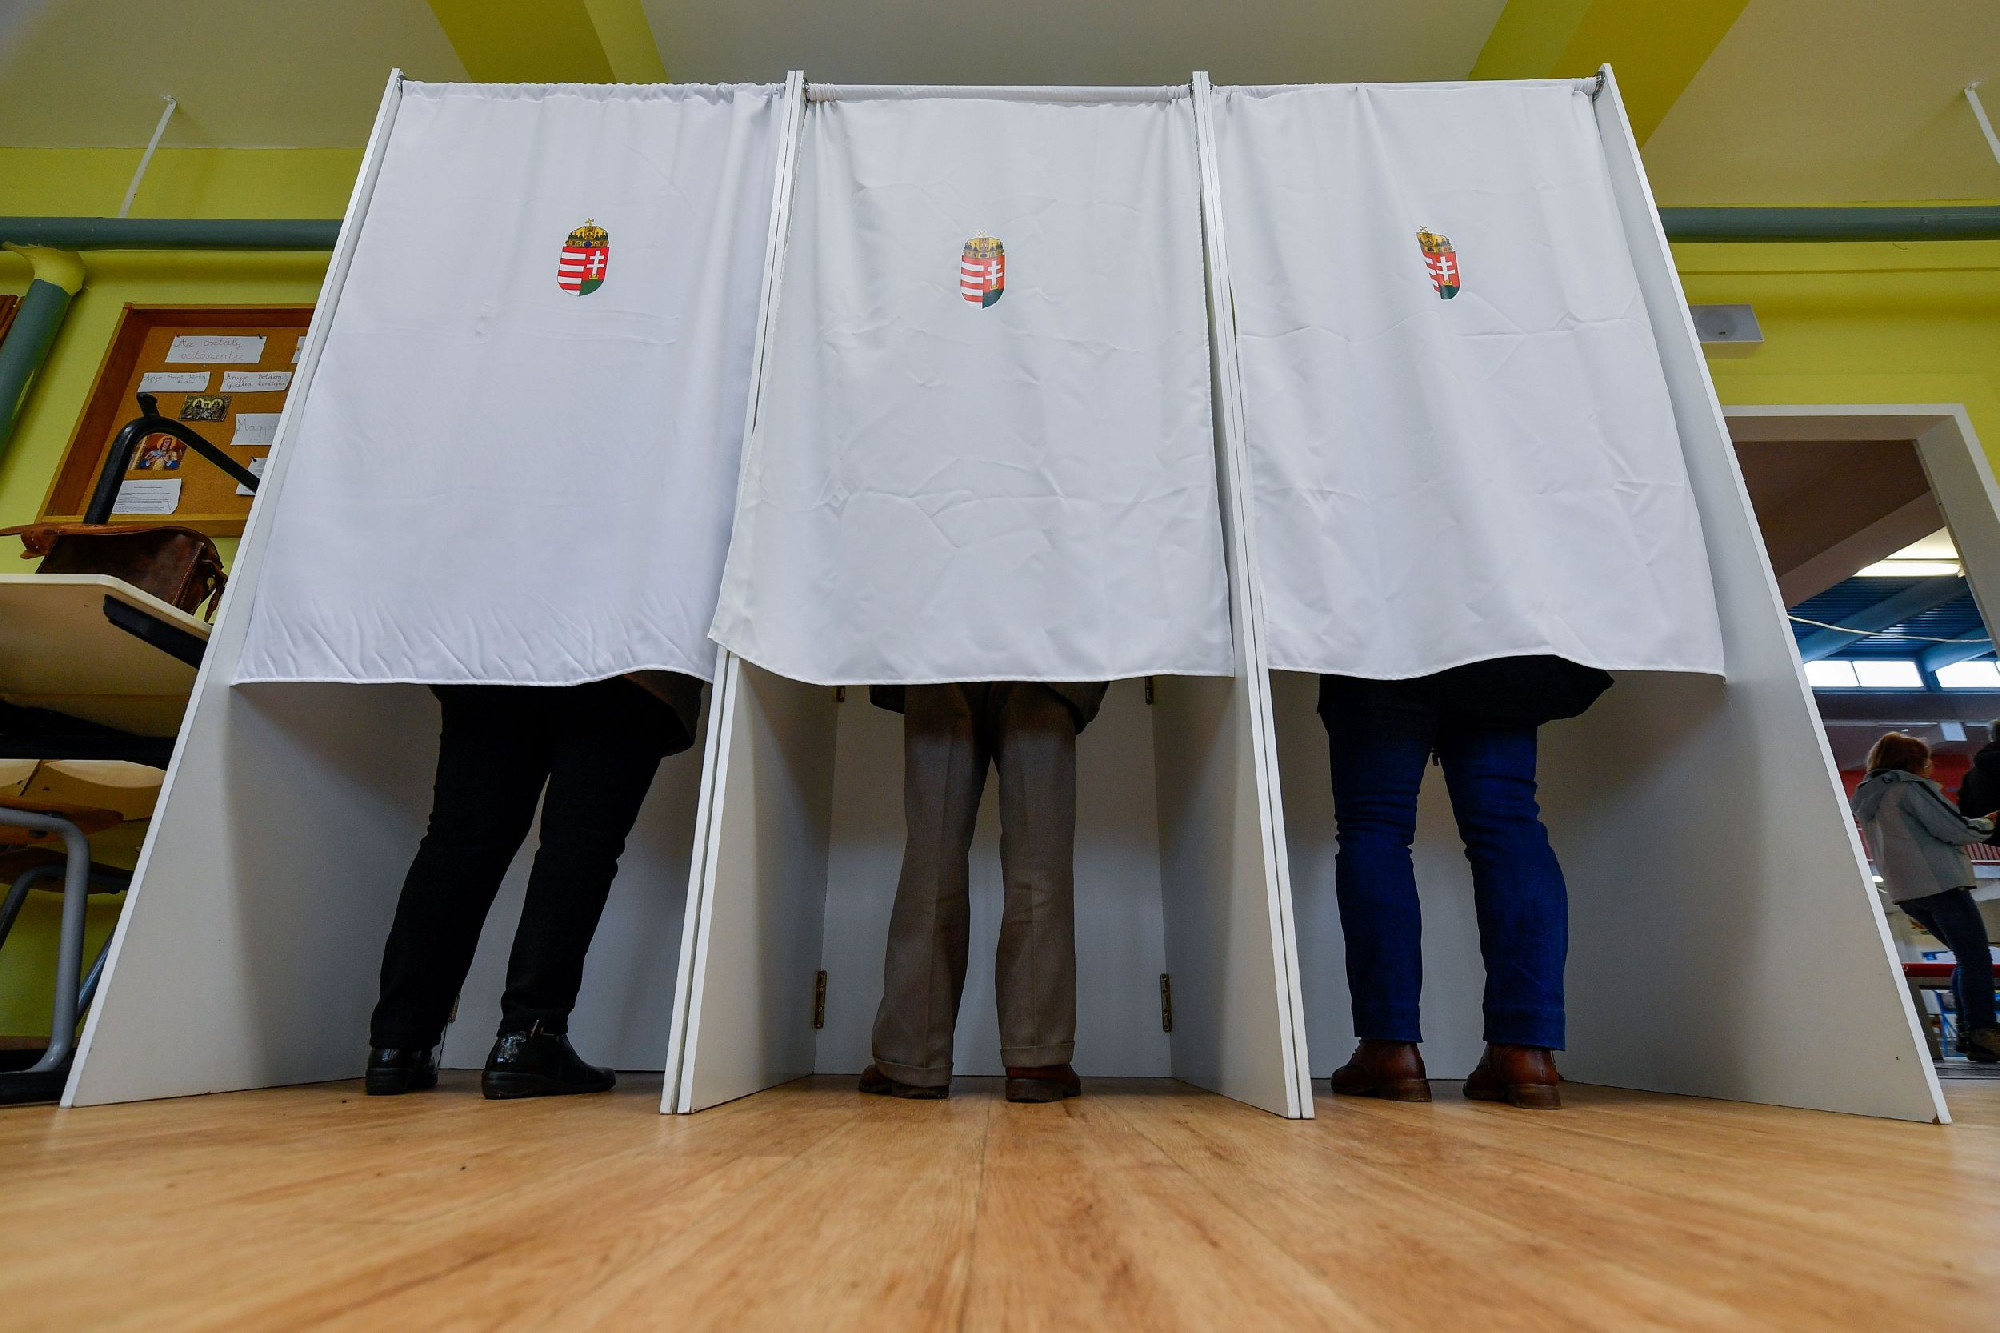 Egy ellenzéki jelölt visszalépett, egy másik viszont bejelentkezett Miskolcon